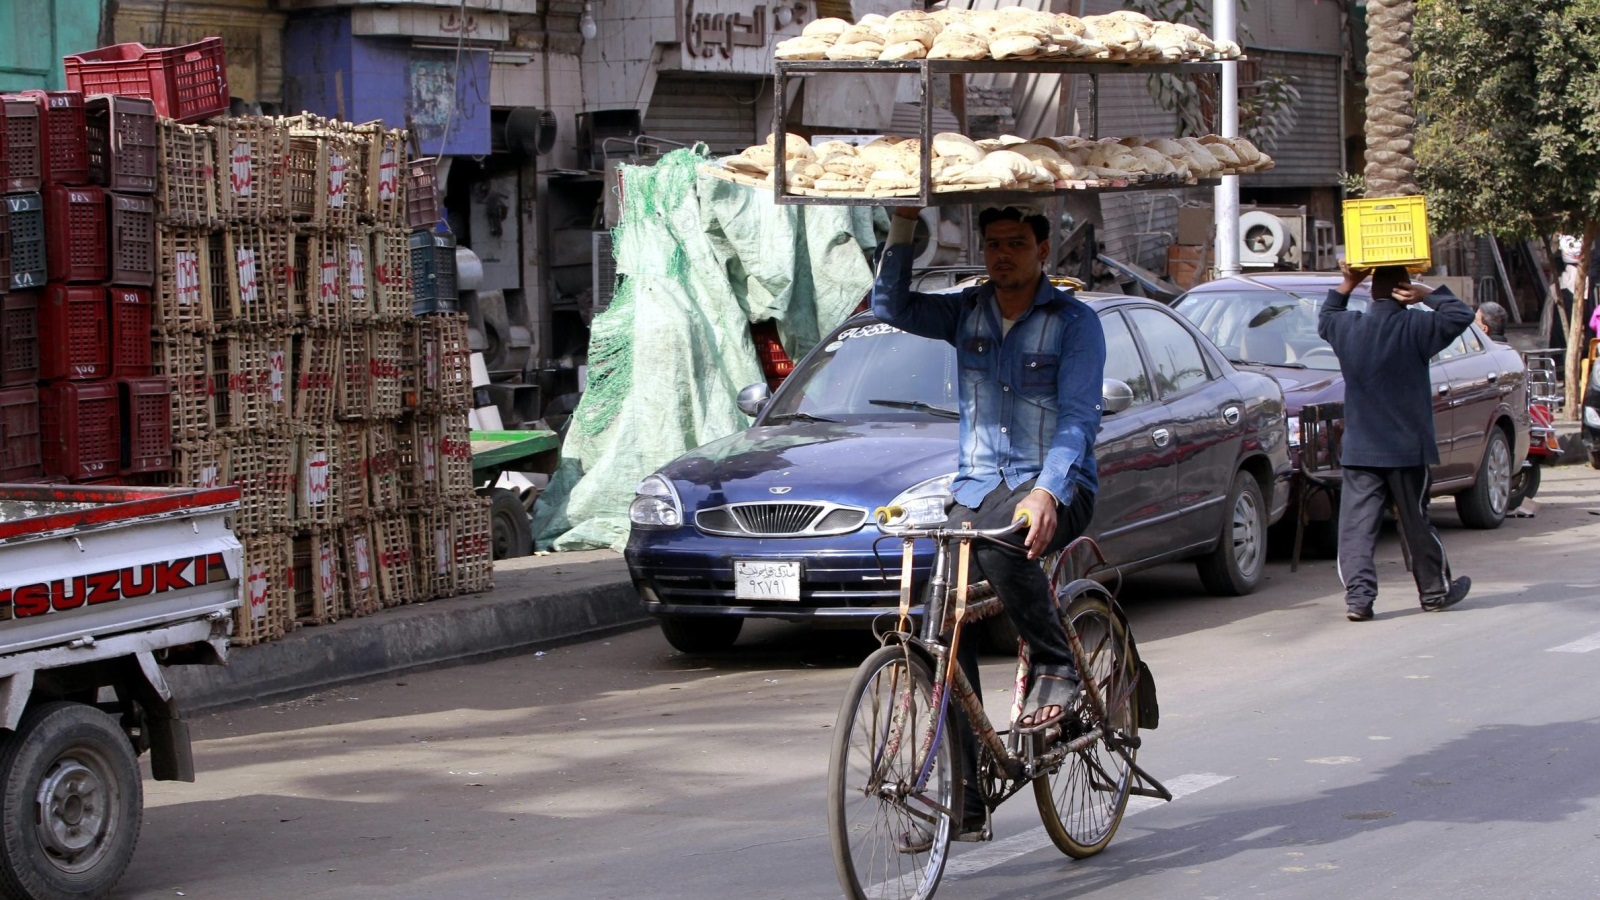 قرابة ثلث المصريين يعيشون تحت خط الفقر بحسب آخر إحصاء رسمي (الأوروبية)